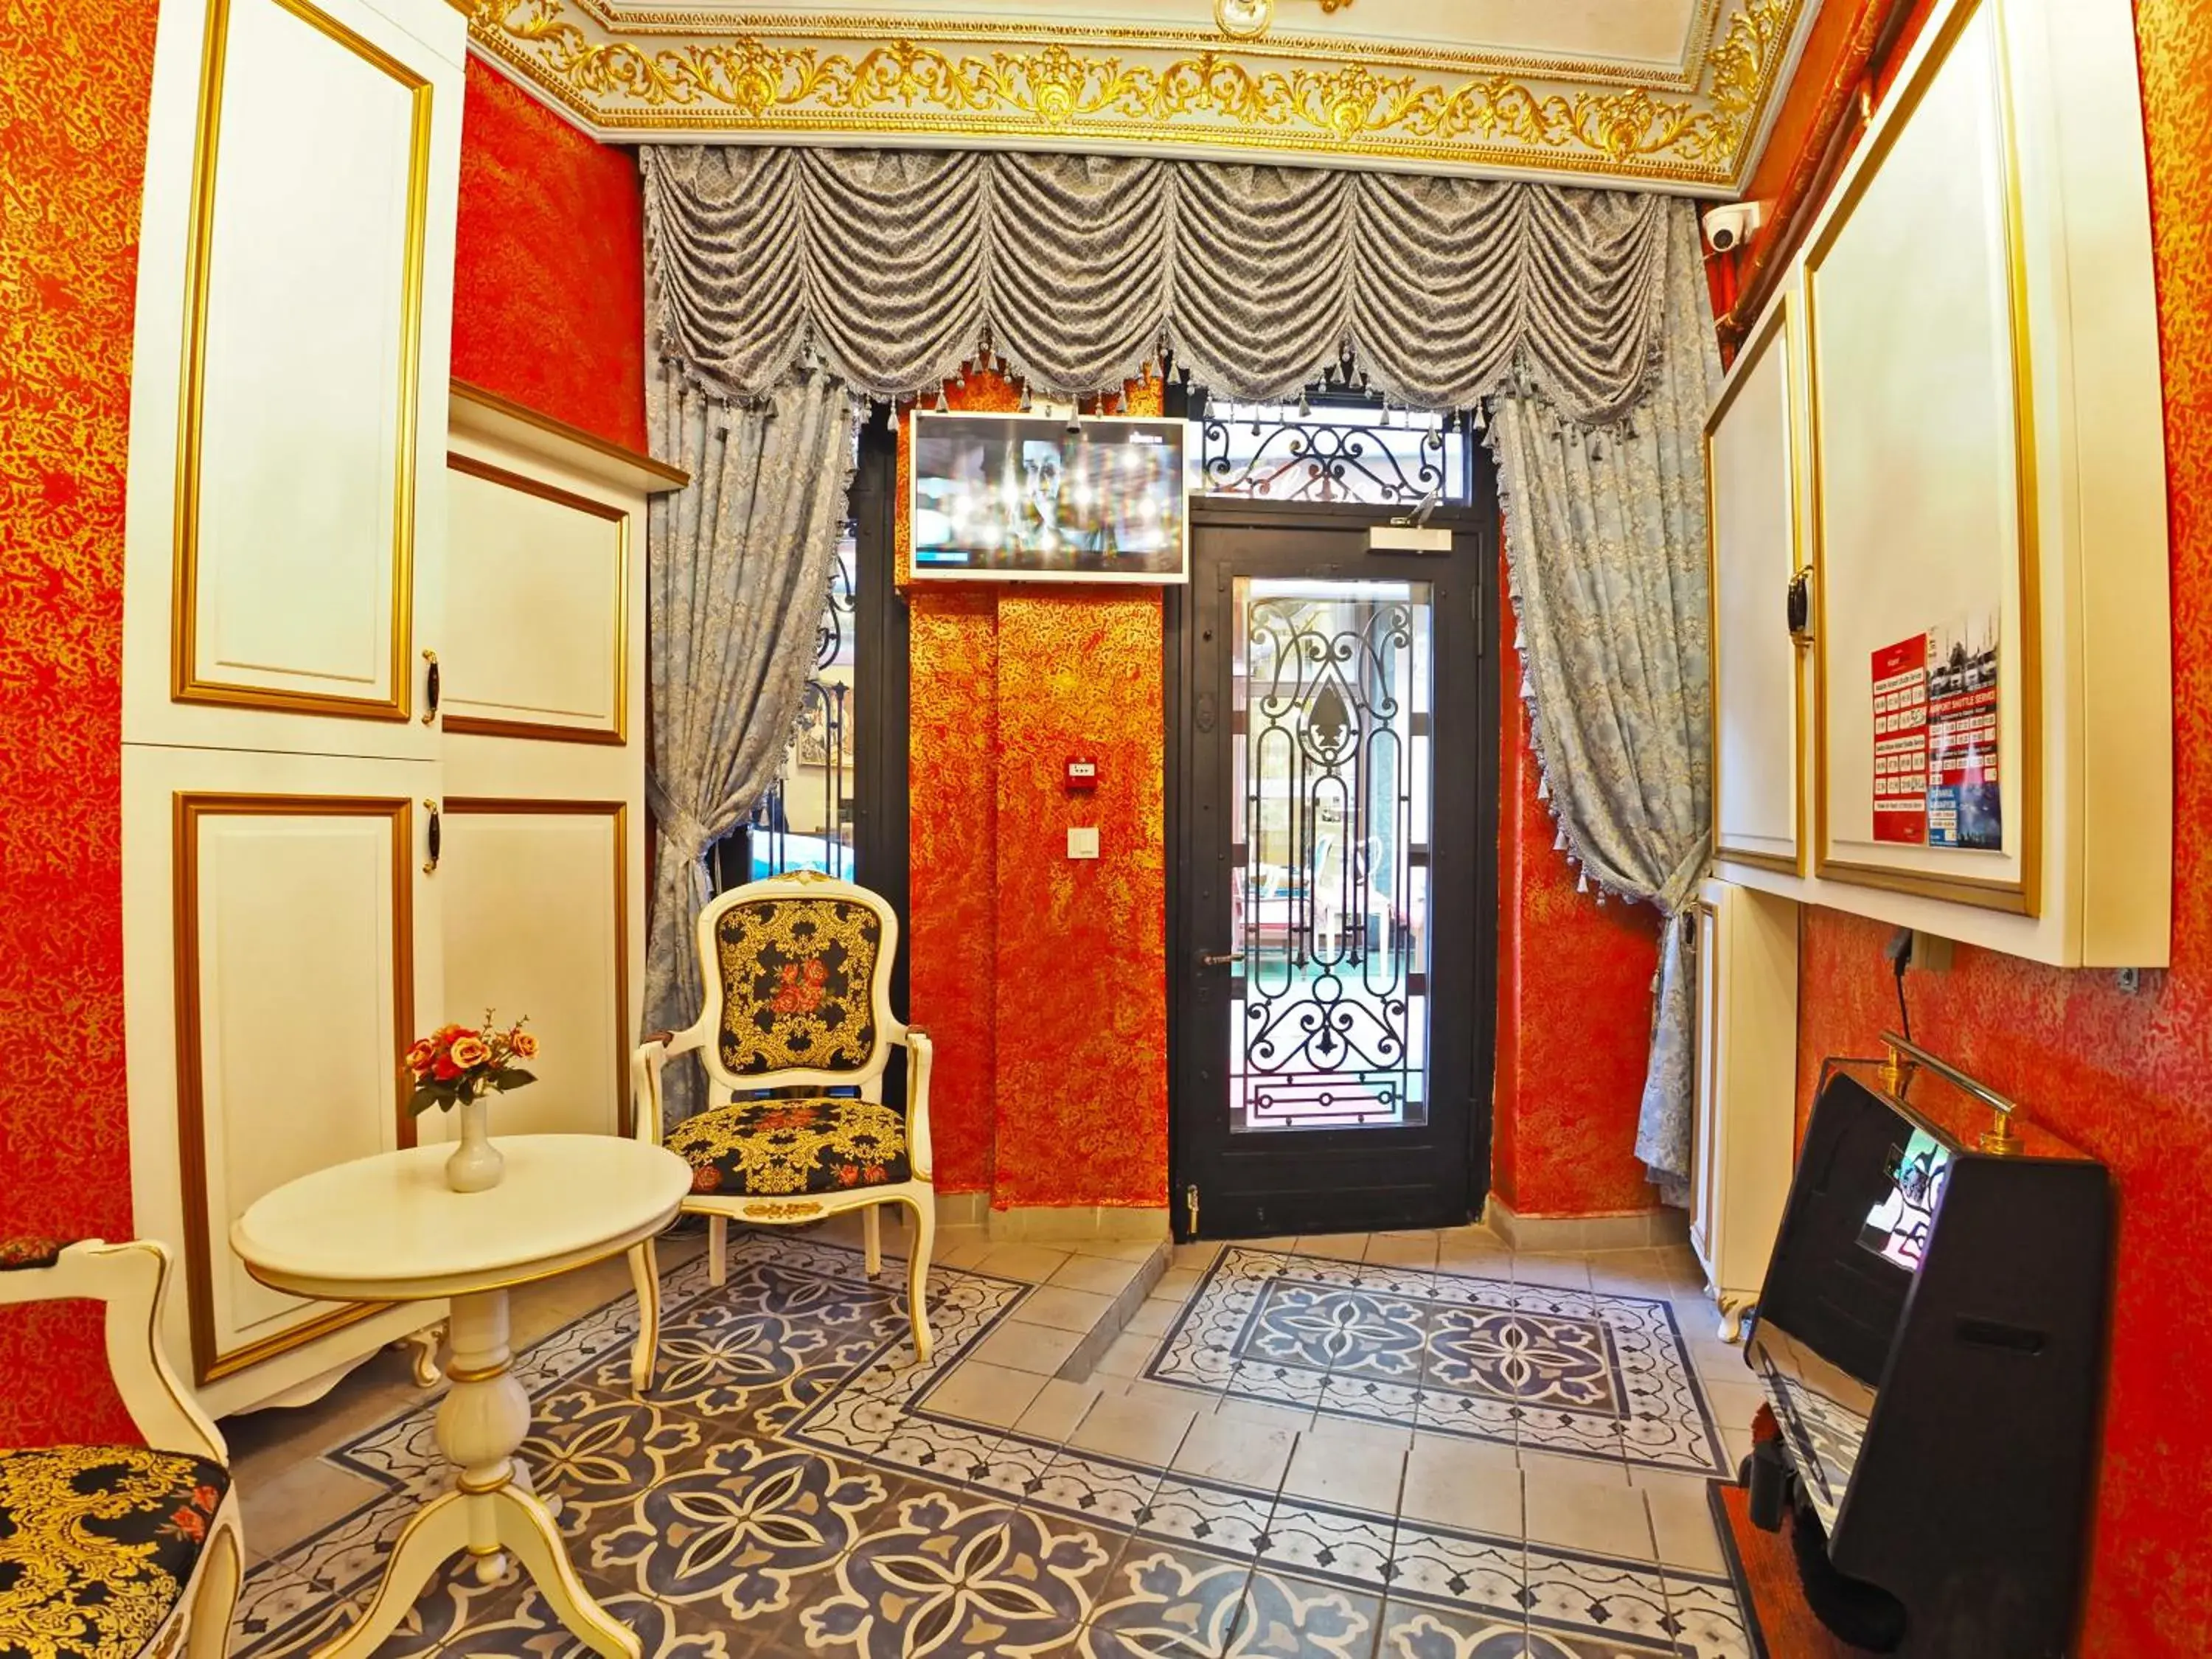 Facade/entrance in Sirkeci Gar Hotel